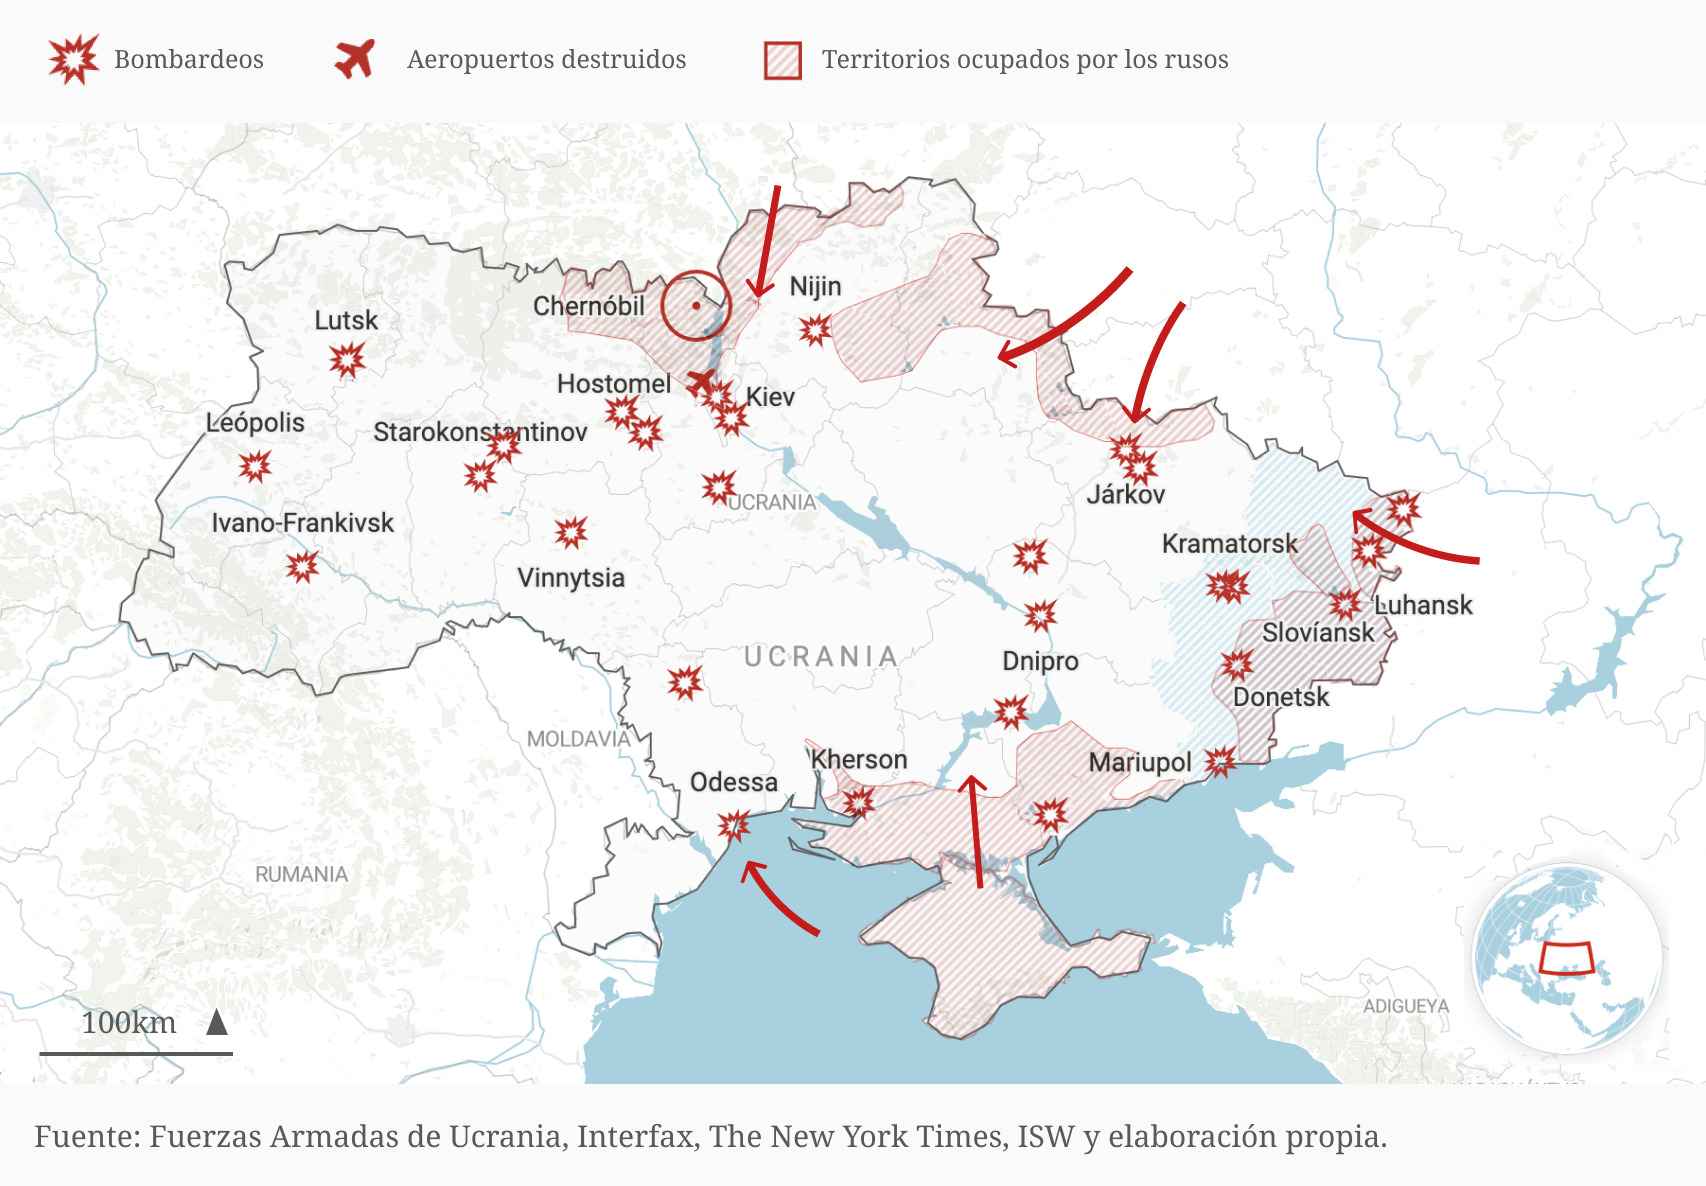 Mapa actualizado de la situación bélica en Ucrania.